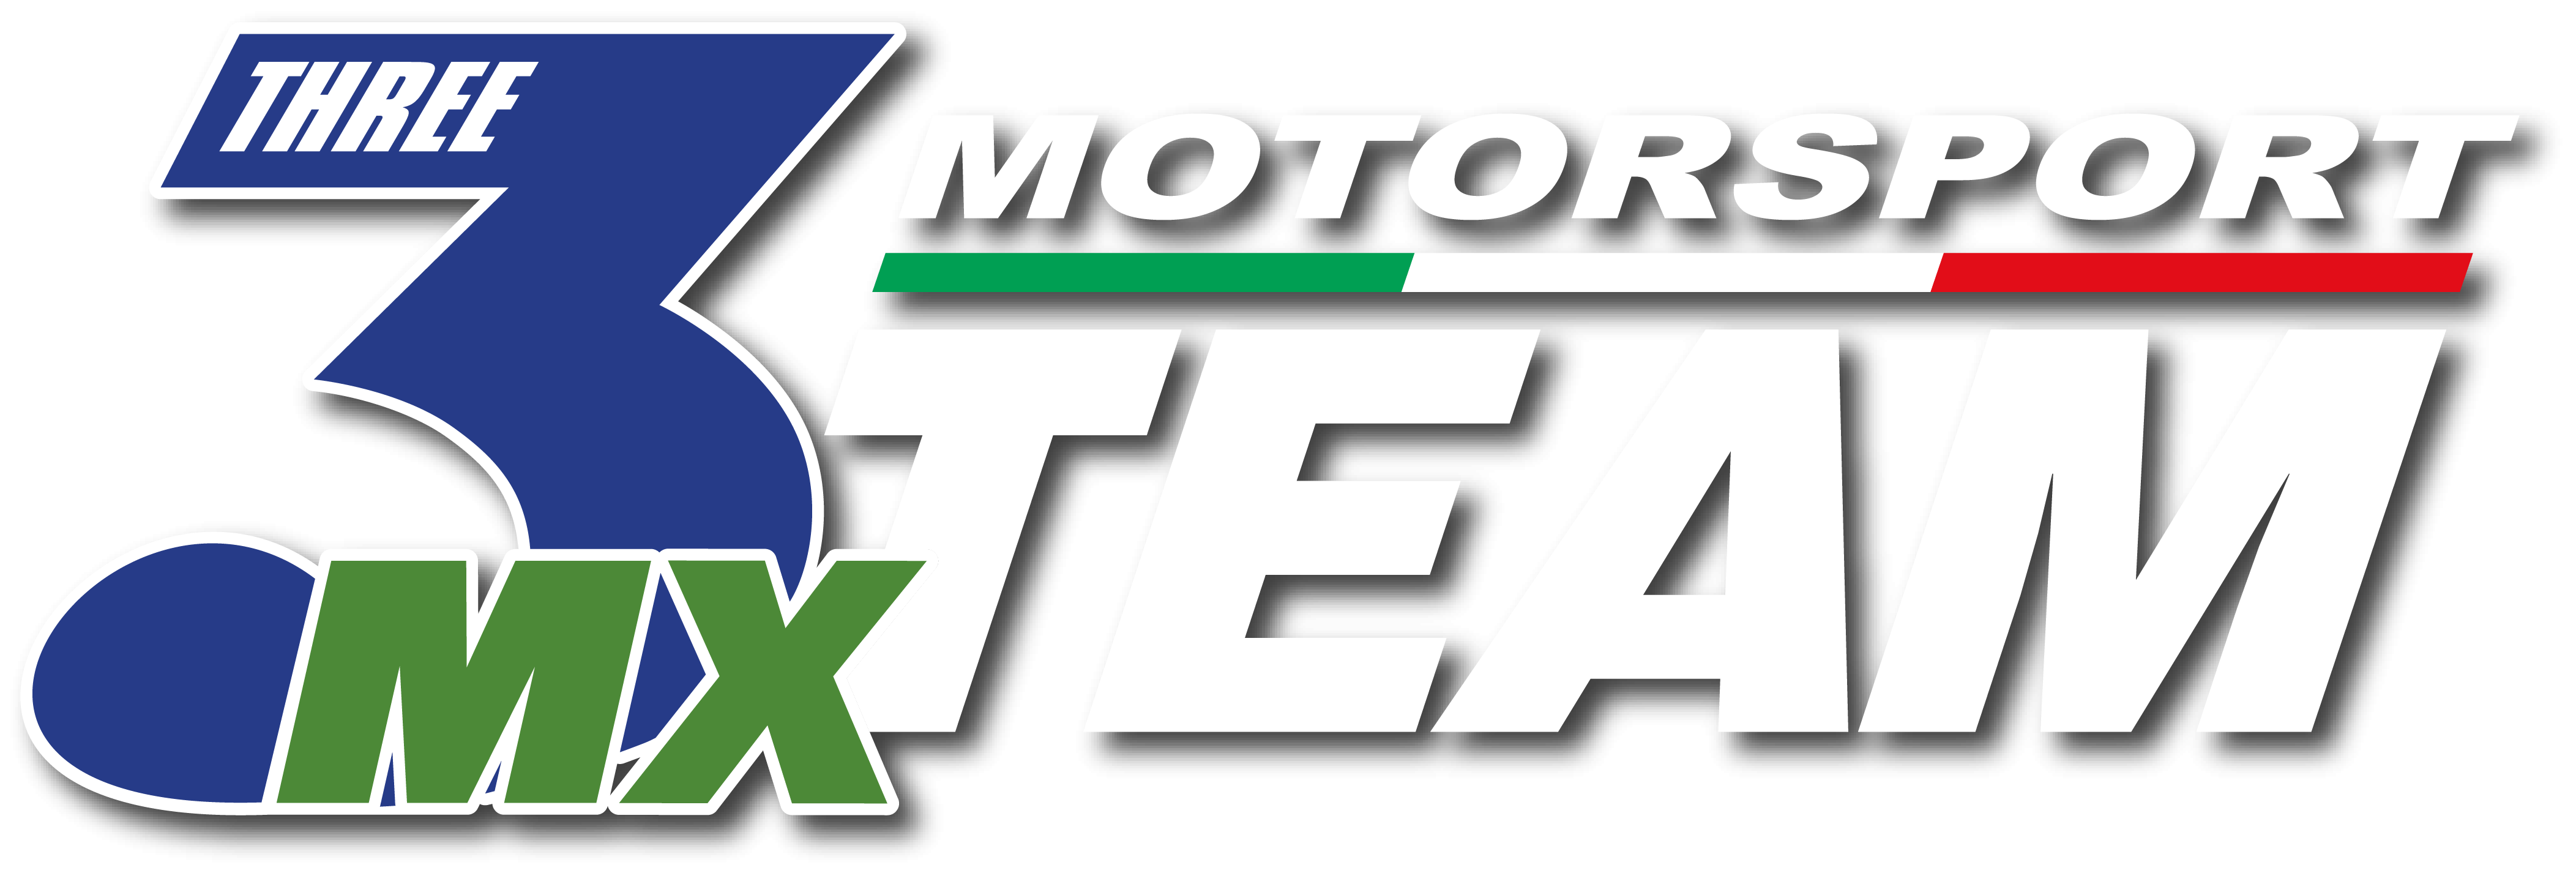 3MXTeam Motorsport